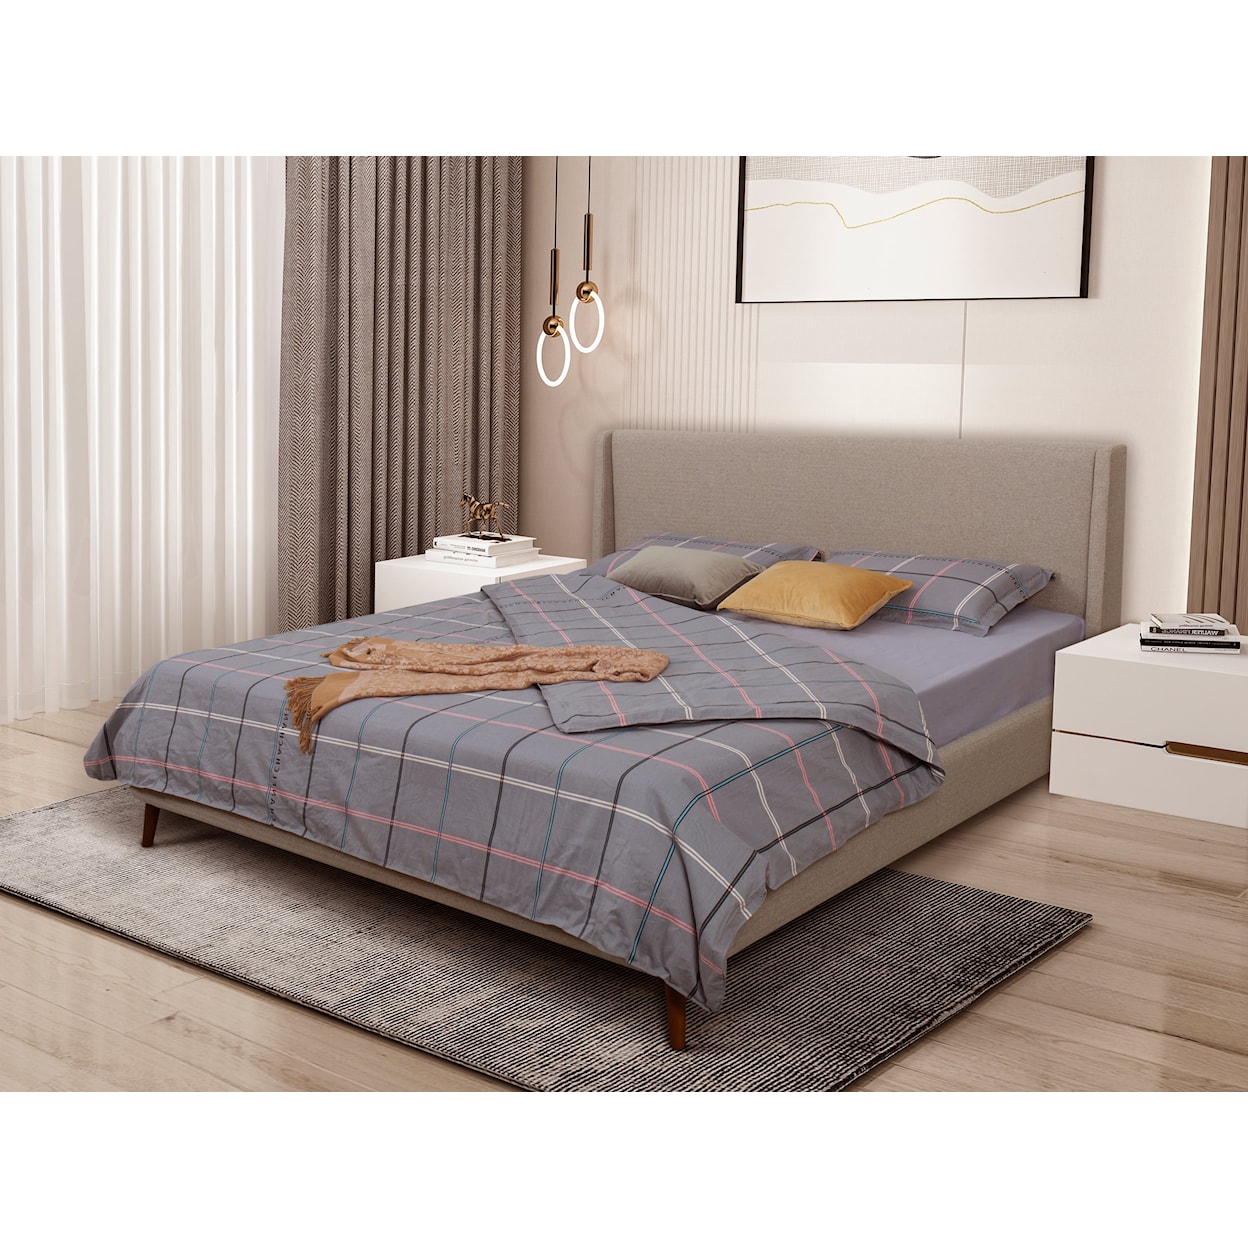 idealSLEEP South Bay International Queen Bed Frame